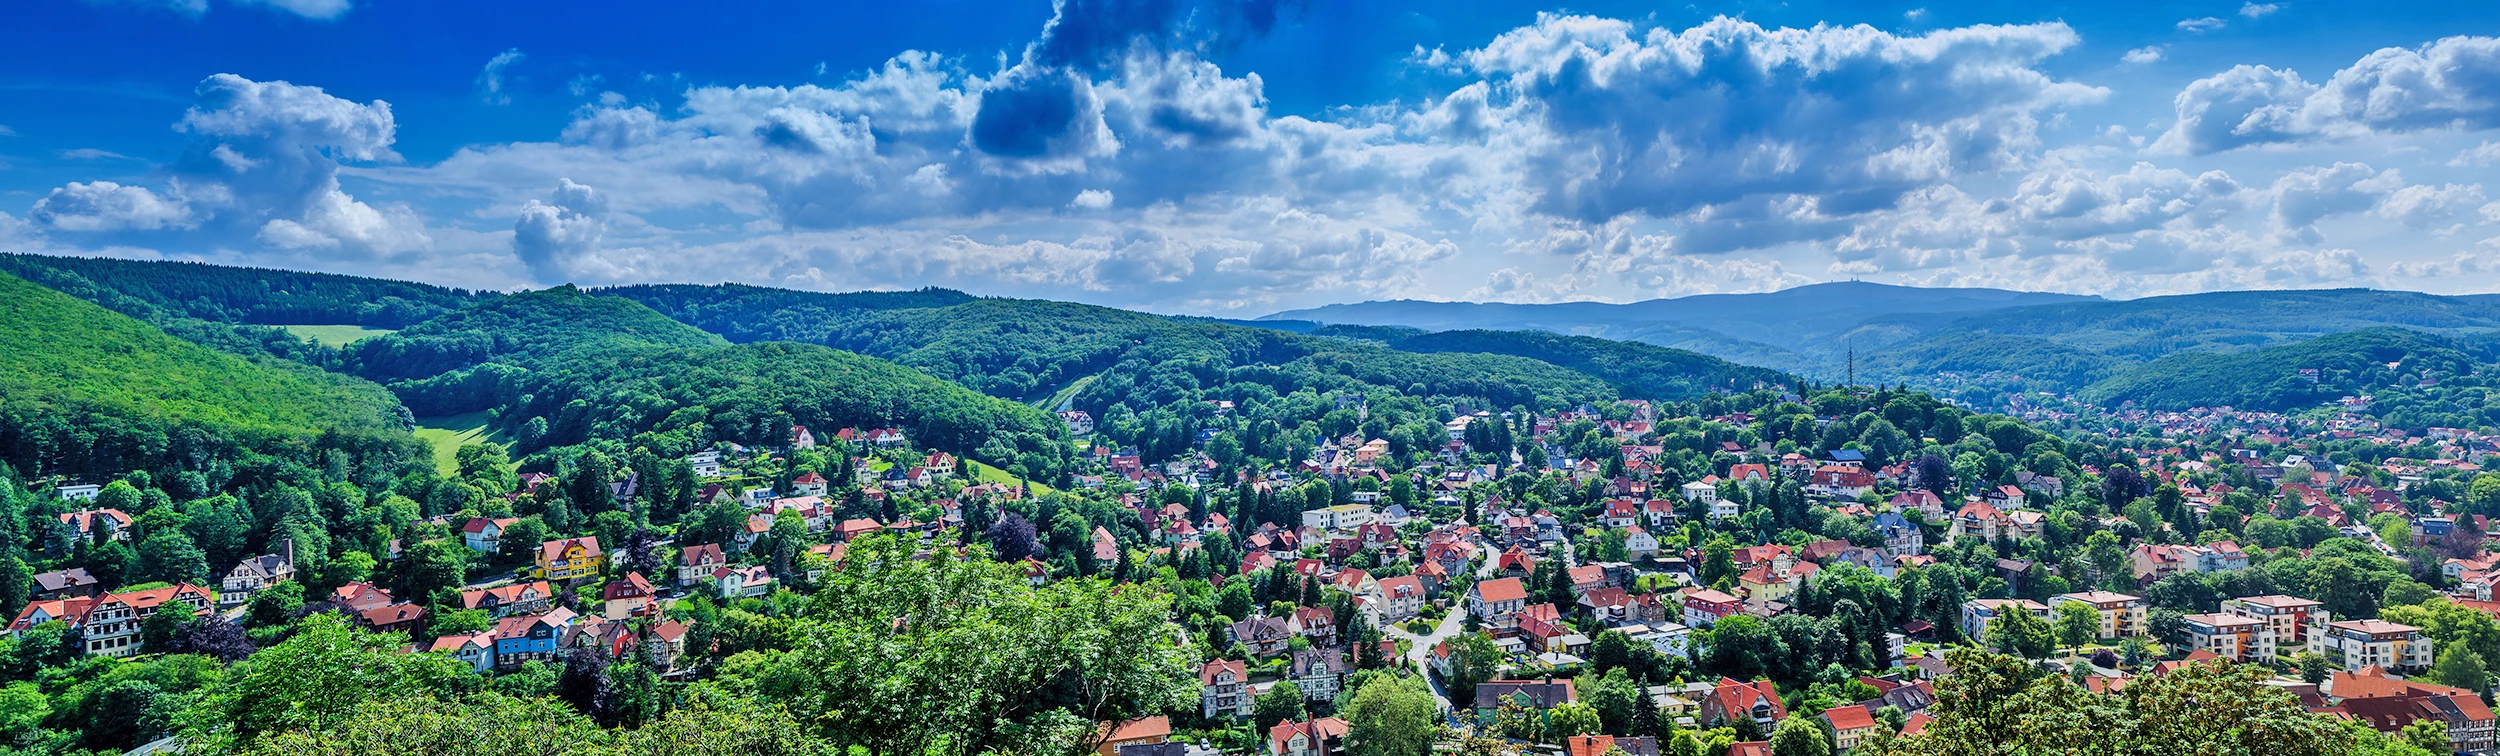 Panoramaluftbild von Wernigerode inmitten der Wälder des Harz